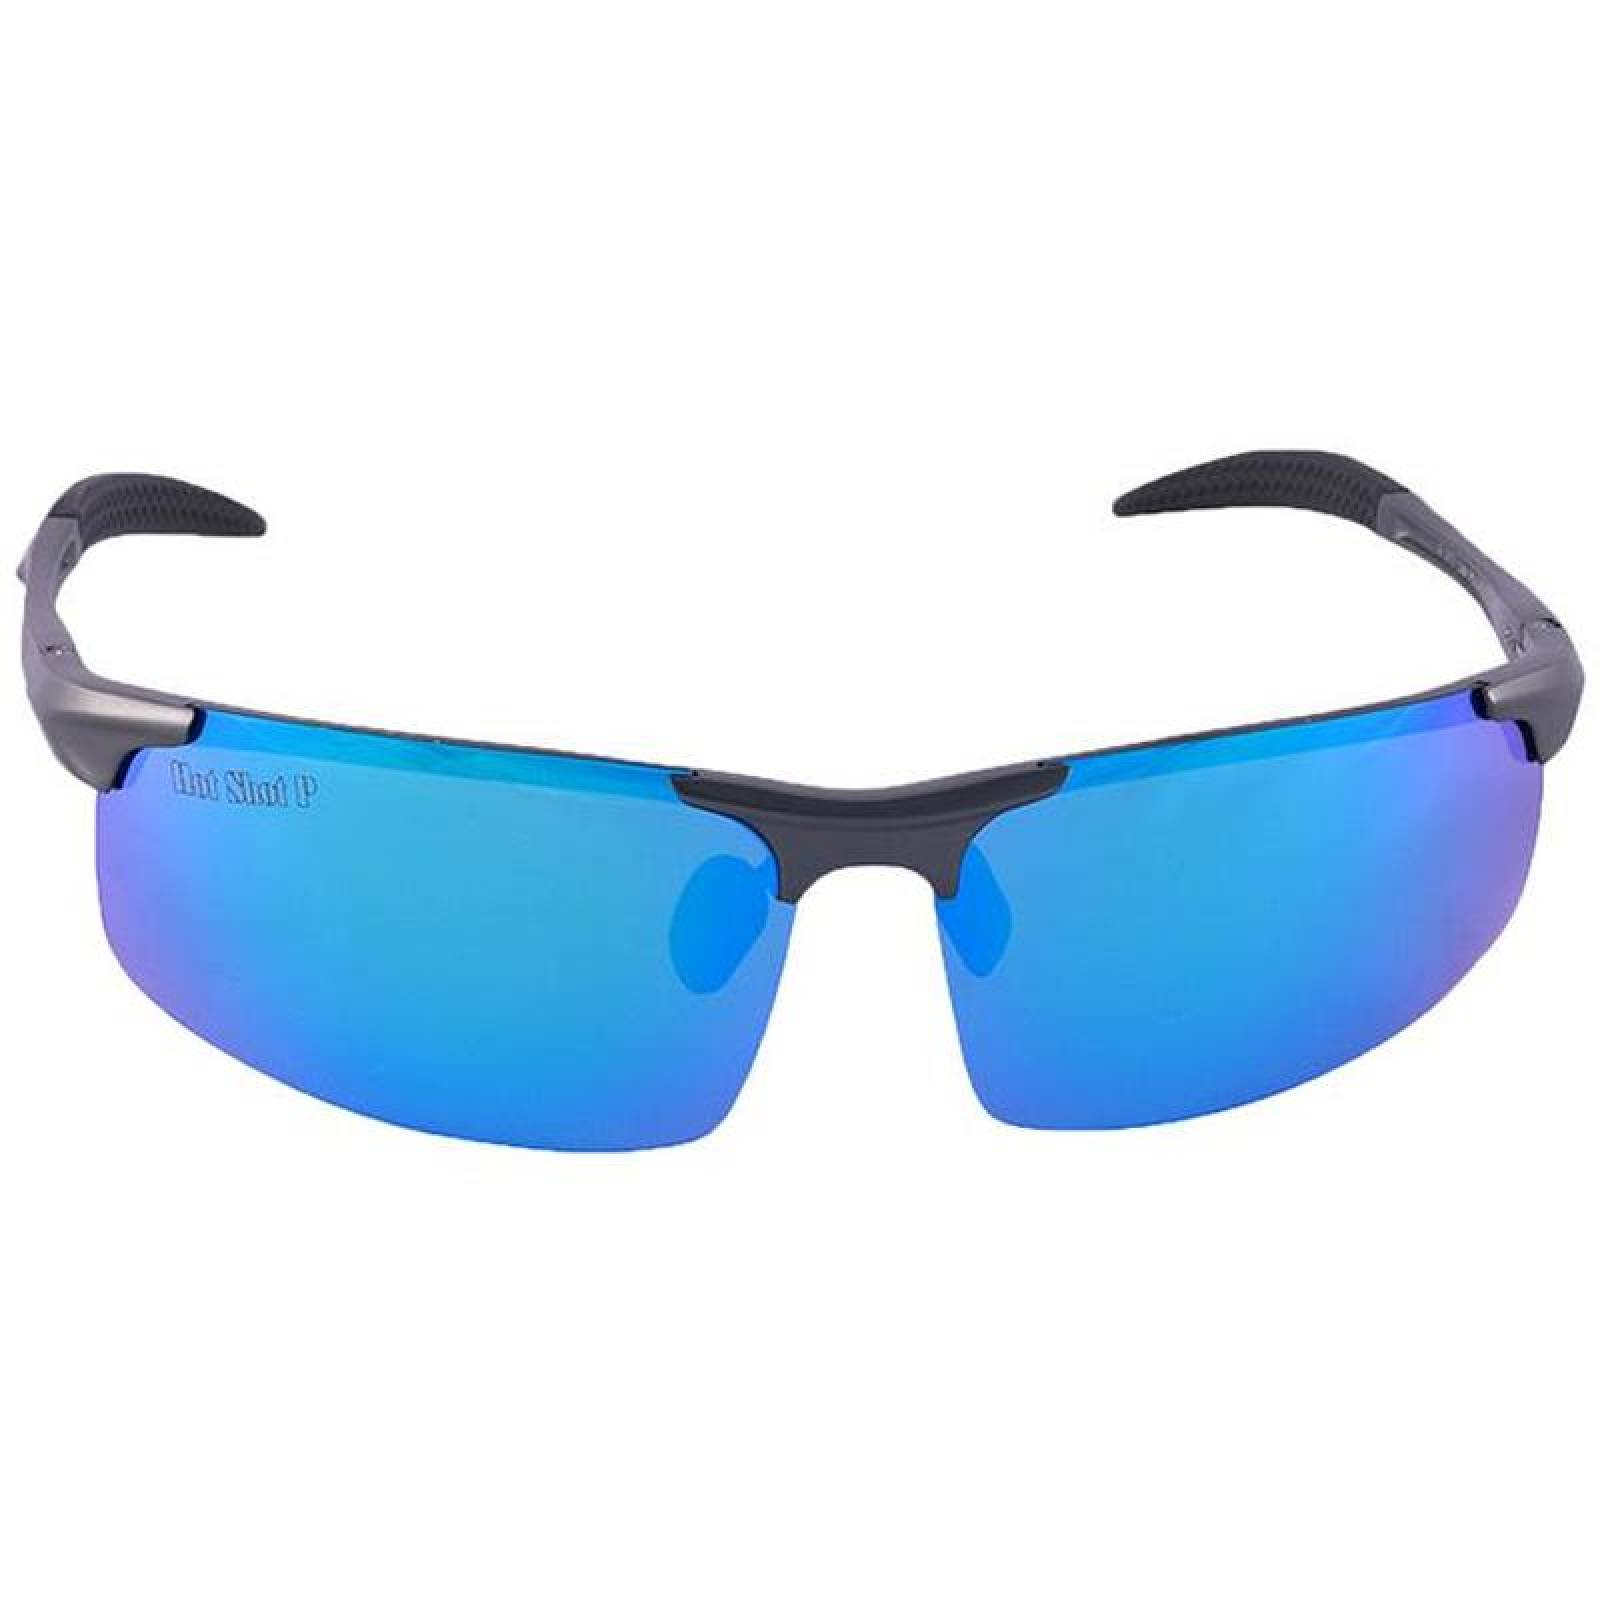 Gafas de sol para hombre MXHMX-002-2 Aluminio Azul Unisex Polarizados  Protección UV400 Matrix Collection